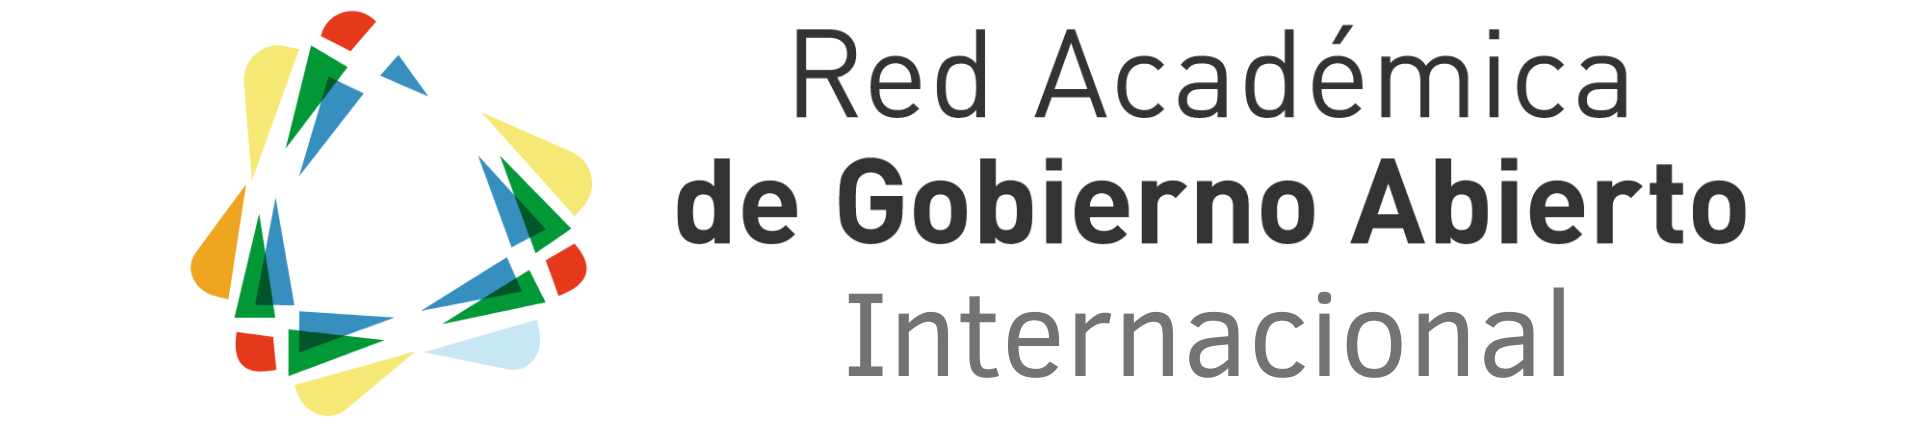 Red Académica de Gobierno Abierto Internacional: RAGA Internacional